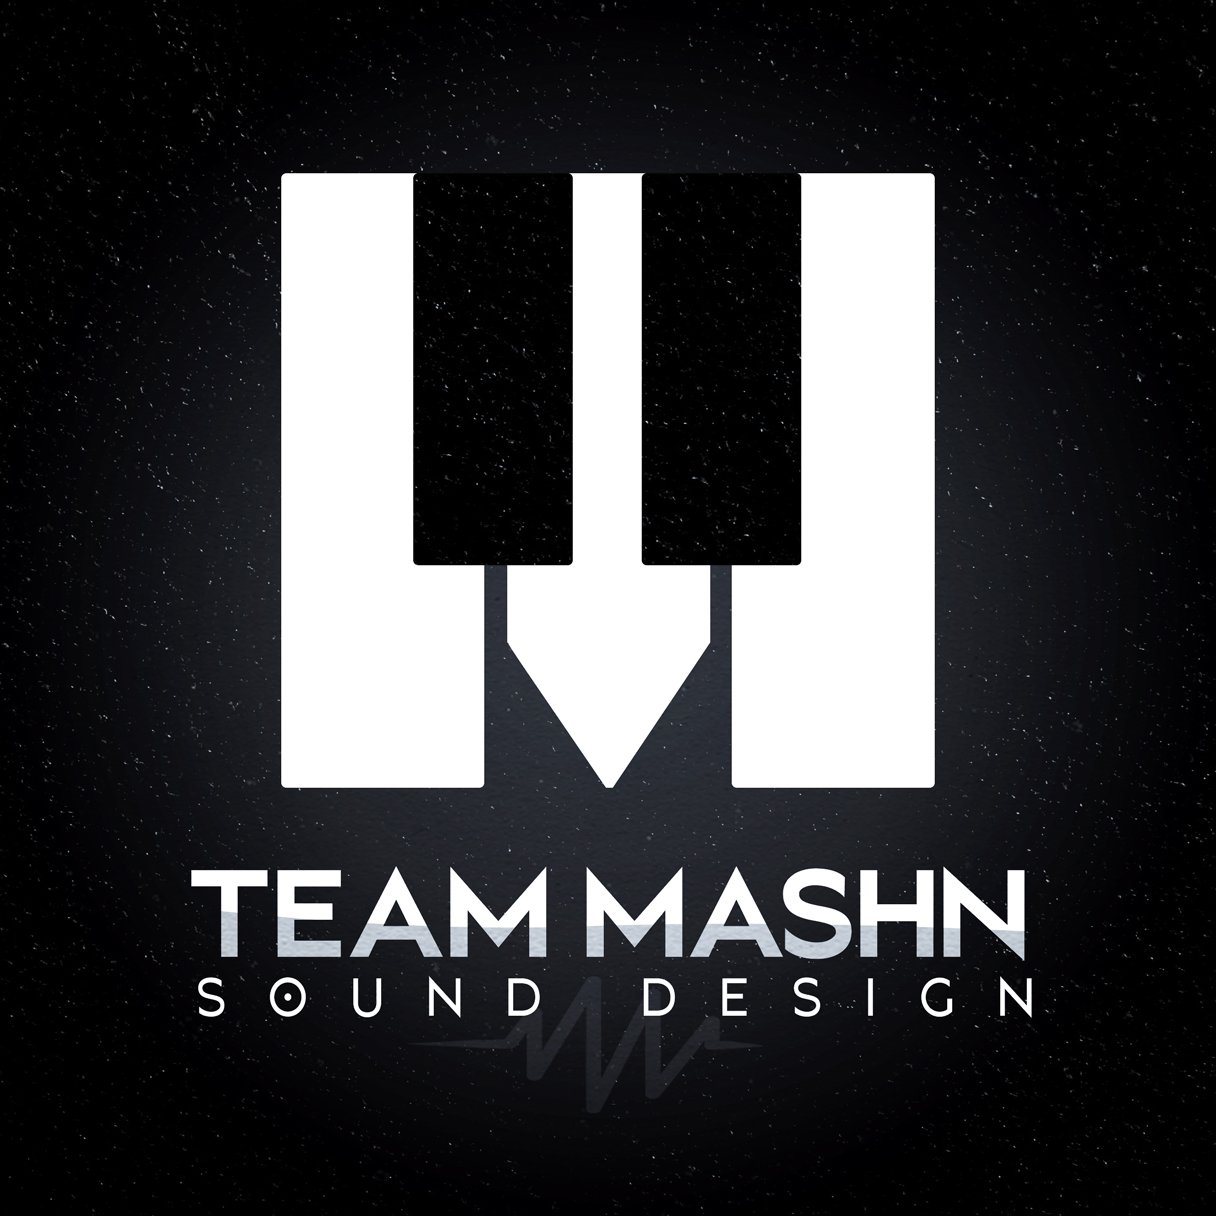 Team Mashn Sound Design